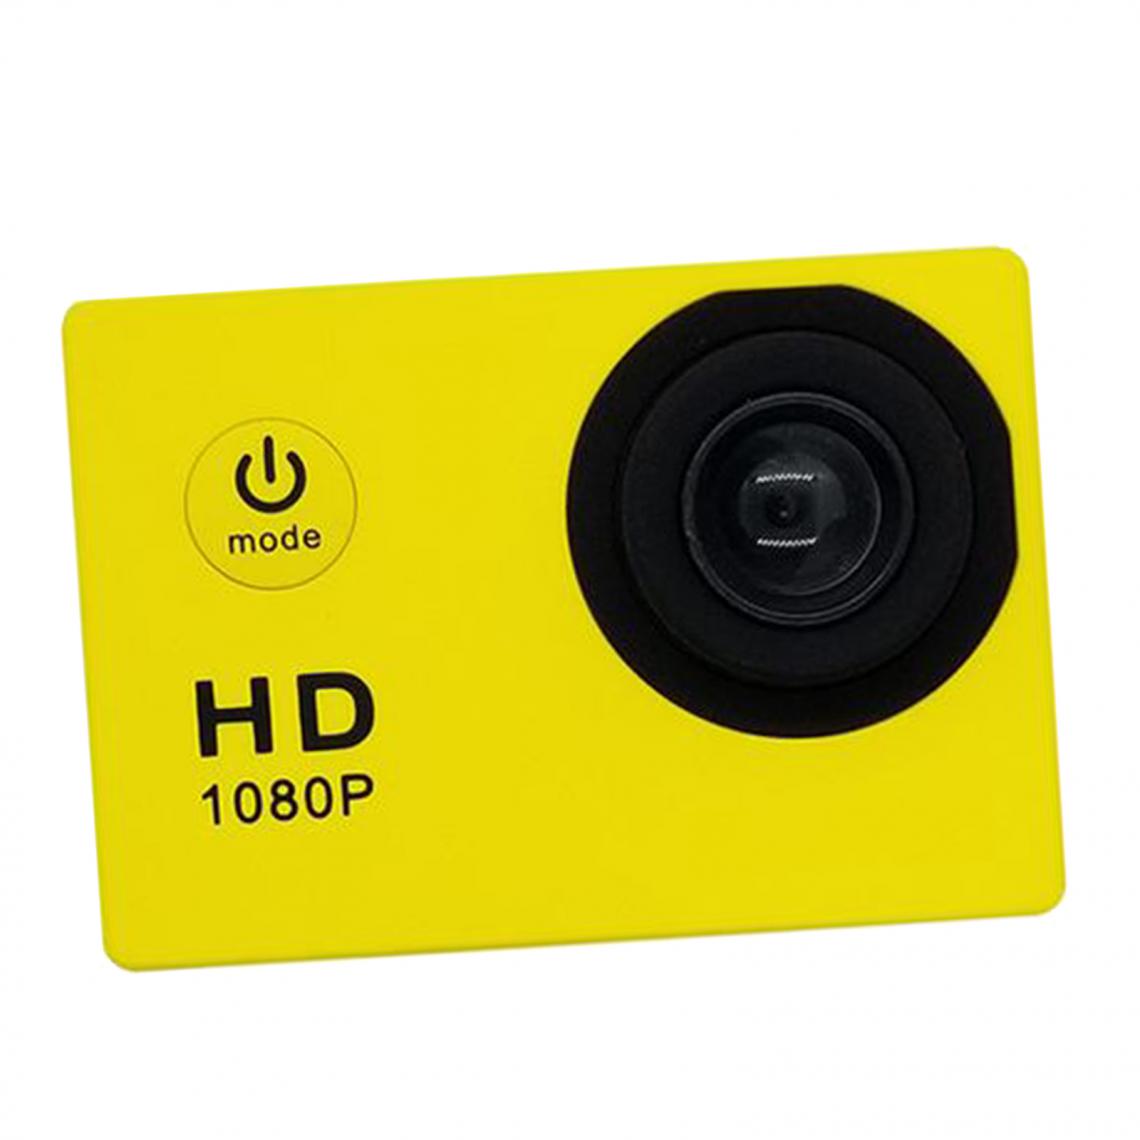 marque generique - SJ4000 HD 1080P Caméscope Sports DV Caméra D'action Caméra Vidéo étanche Rouge - Caméra de surveillance connectée